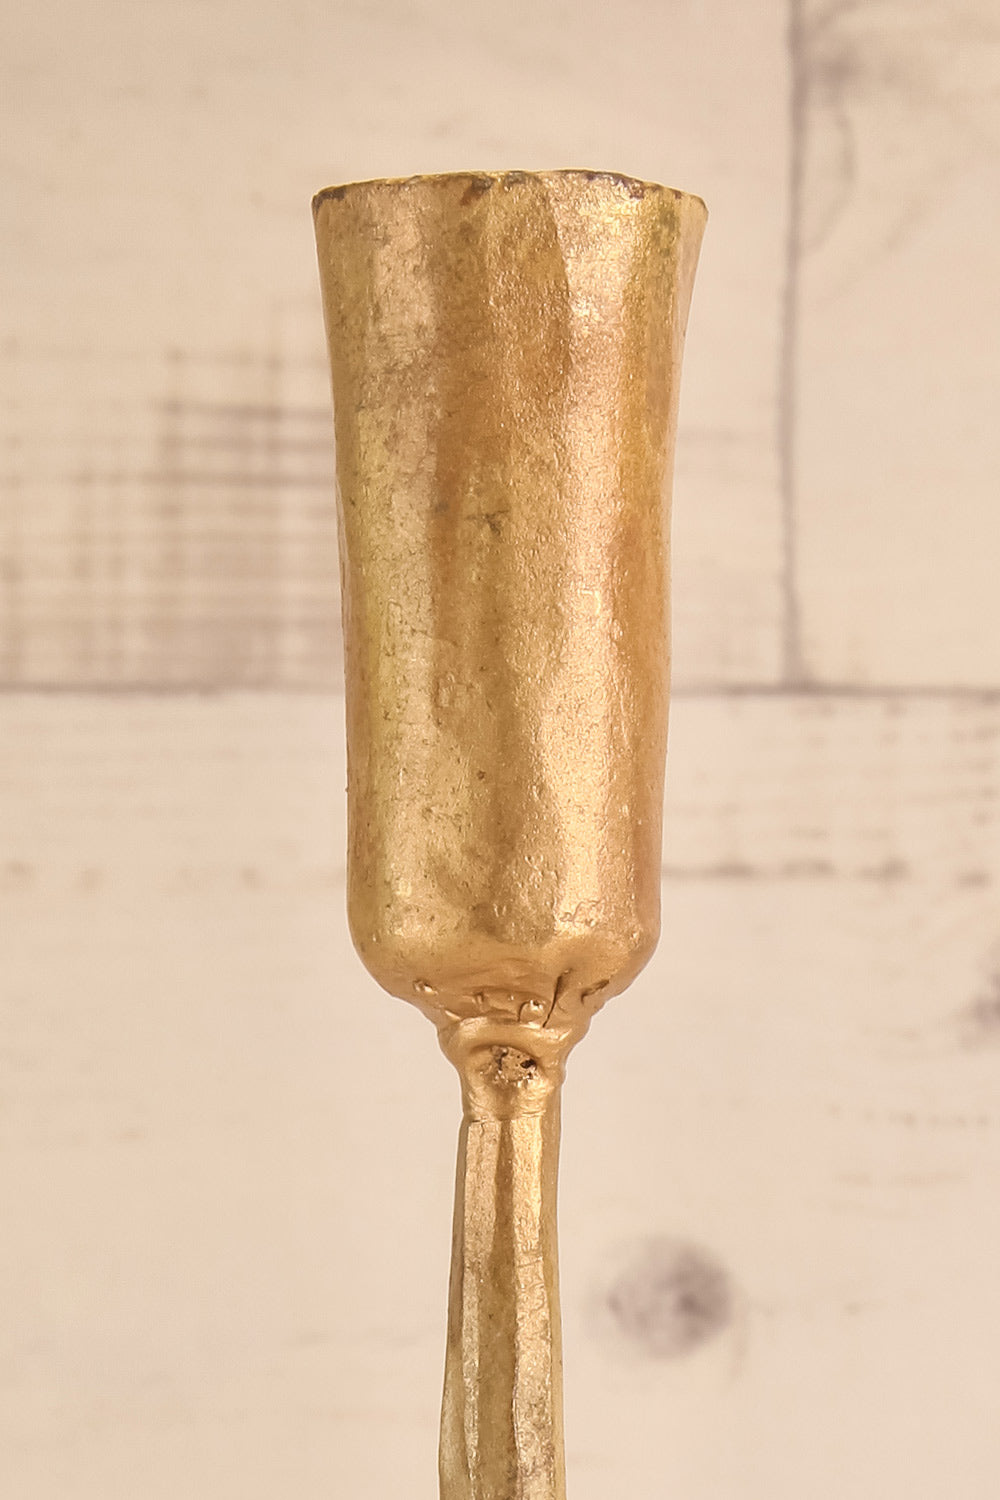 Mbata Brass Candlestick - Antique Brass – Nkuku